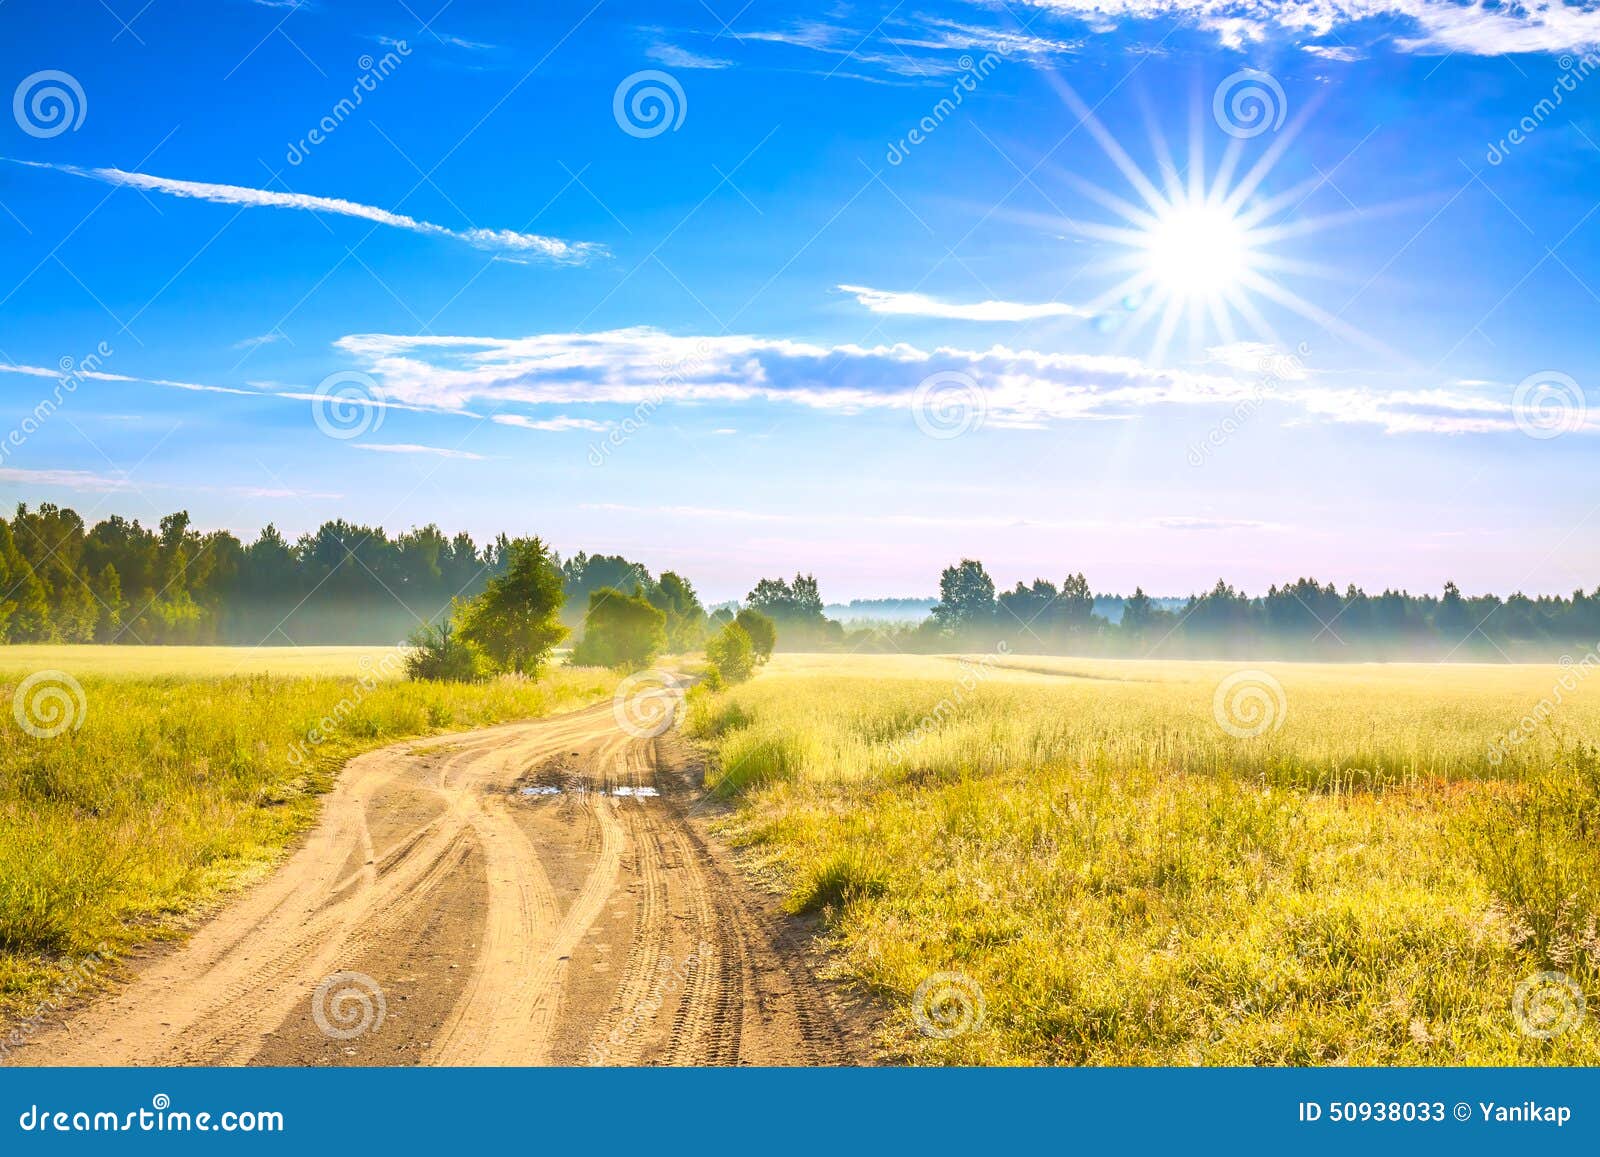 Paysage Rural D Ete Avec Un Champ Un Lever De Soleil Et Une Route Image Stock Image Du Bleu Clair 50938033